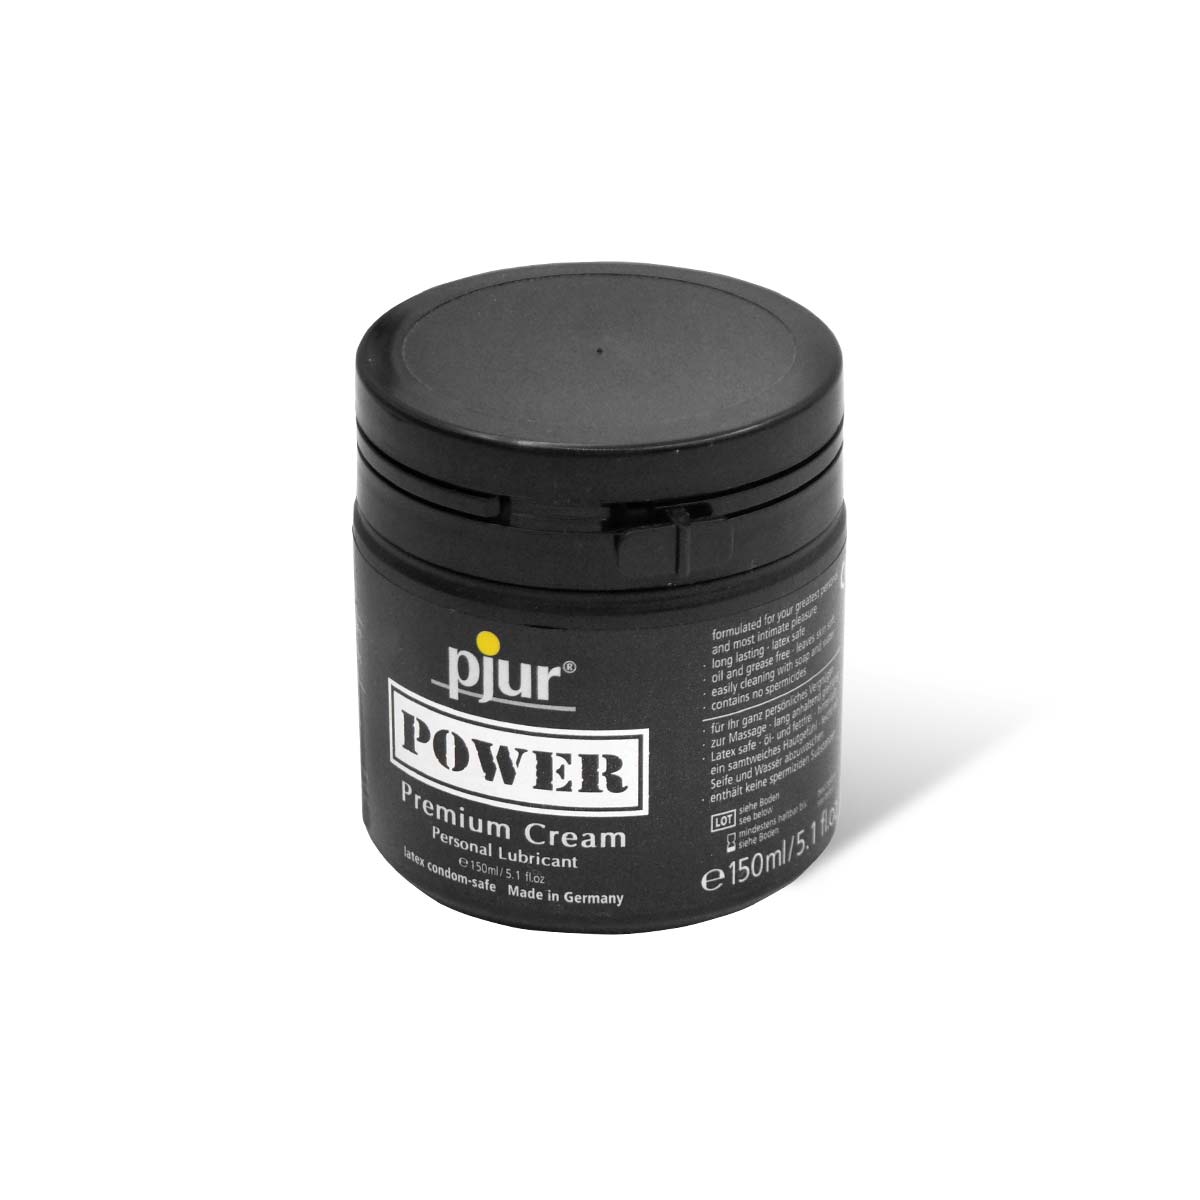 pjur POWER 150ml Premium Cream-p_1